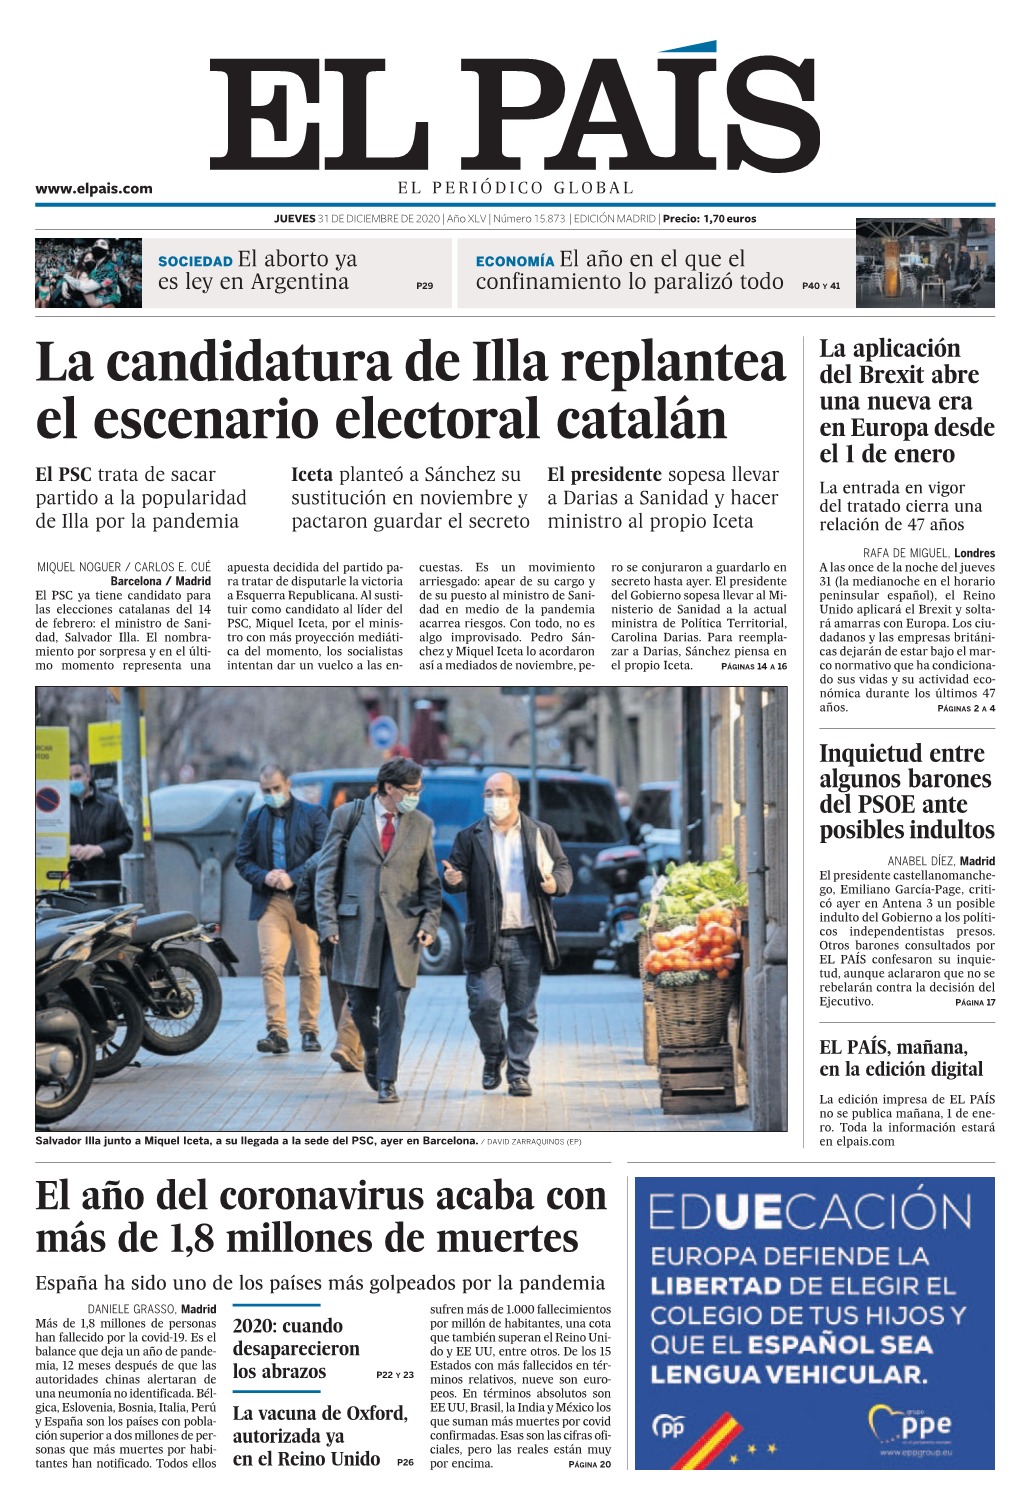 La Candidatura De Illa Replantea El Escenario Electoral Catalán